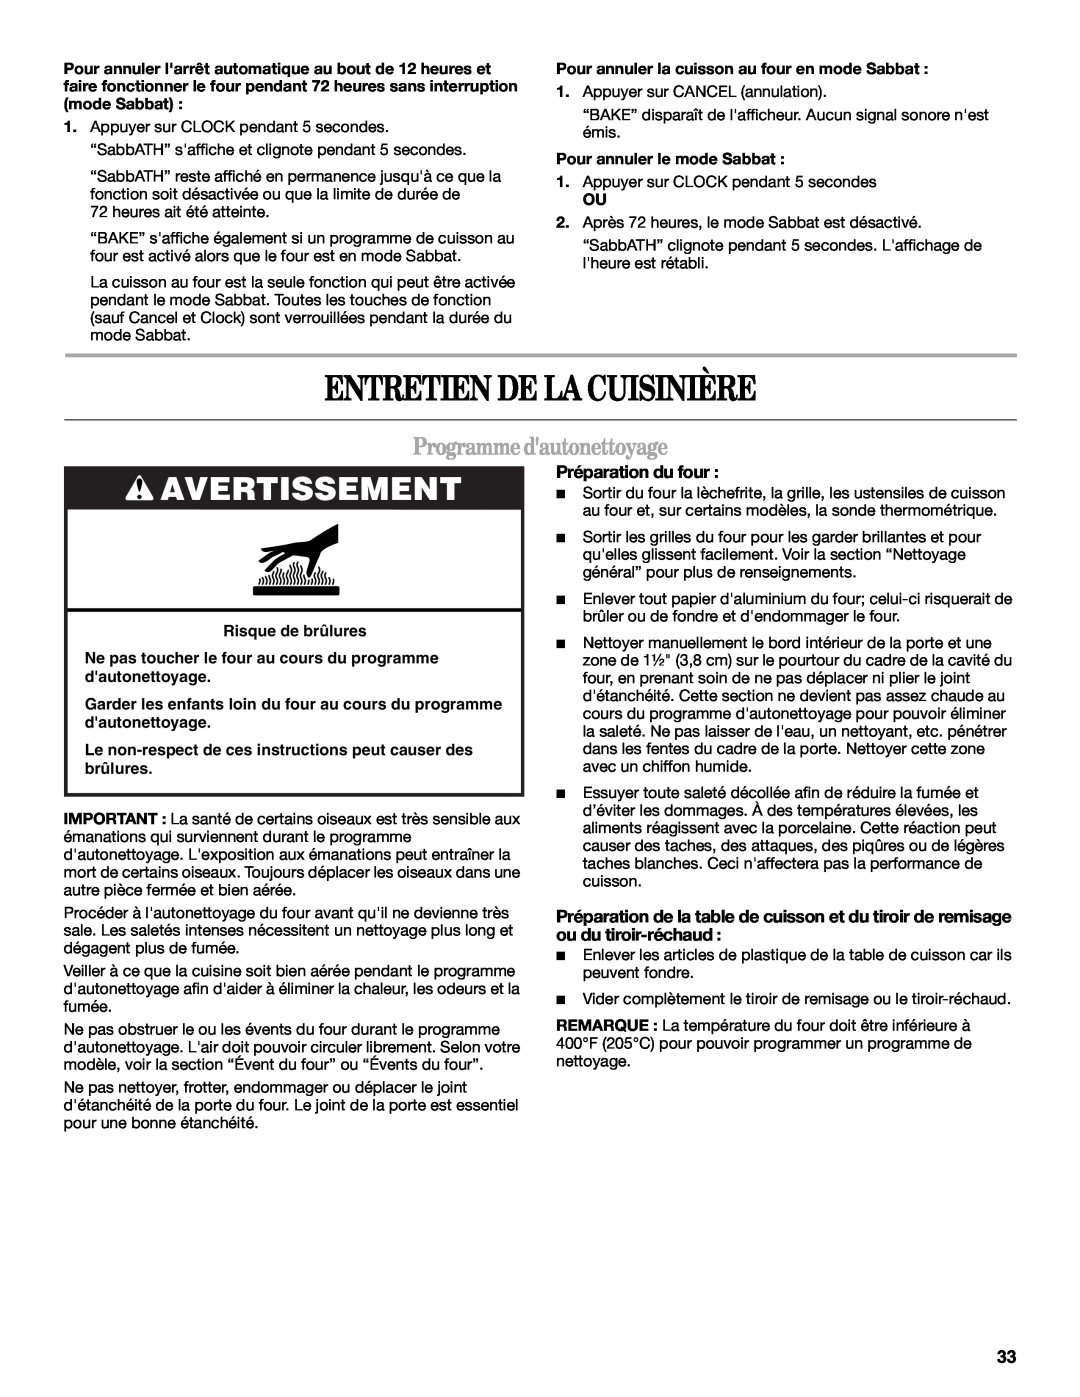 Whirlpool GY397LXUQ manual Entretien De La Cuisinière, Programmedautonettoyage, Préparation du four, Risque de brûlures 